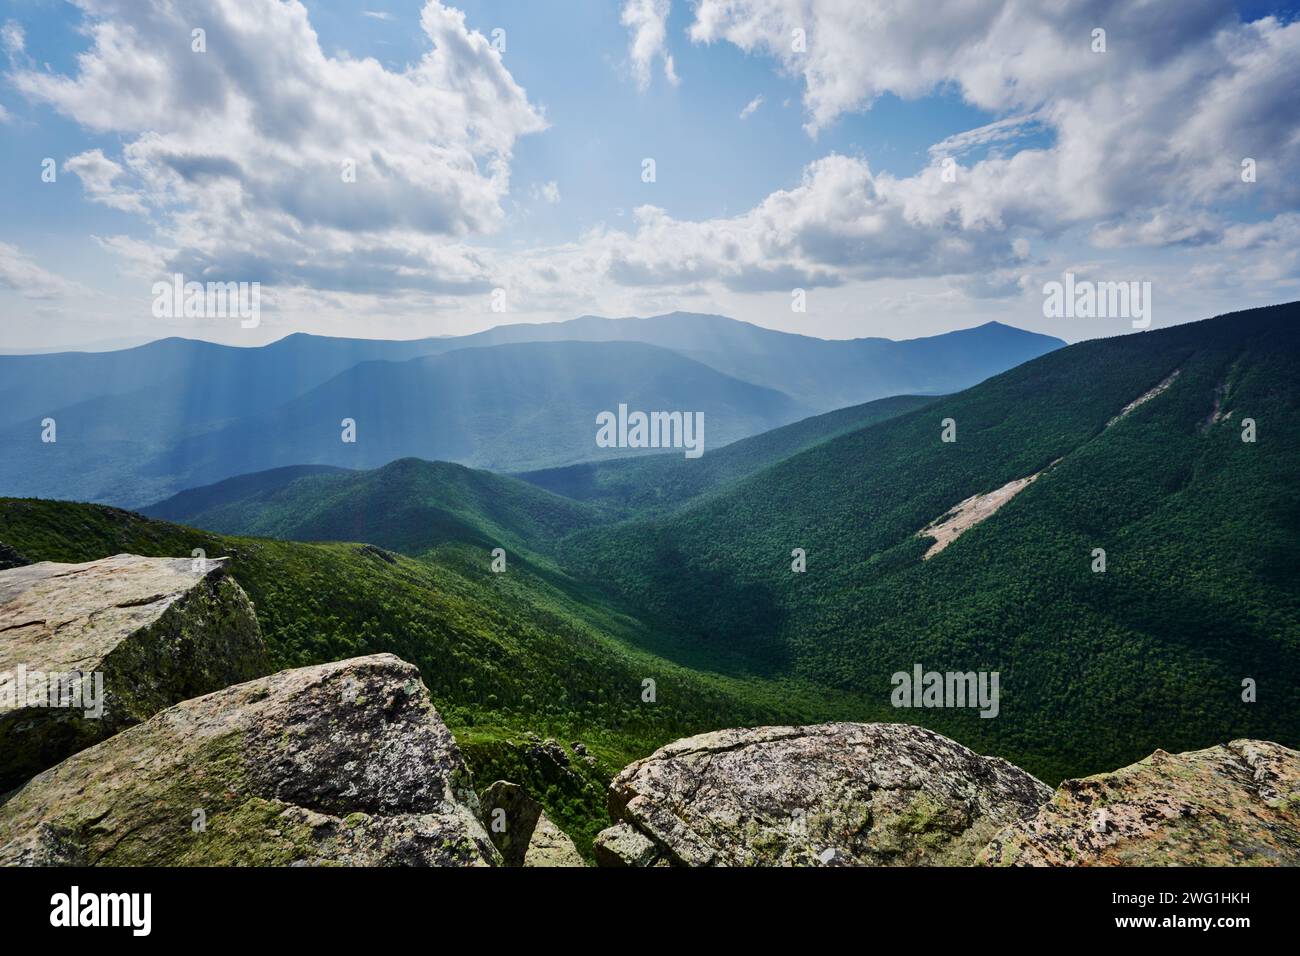 Vue depuis Mount Bond, White Mountains National Forest, New Hampshire, États-Unis Banque D'Images